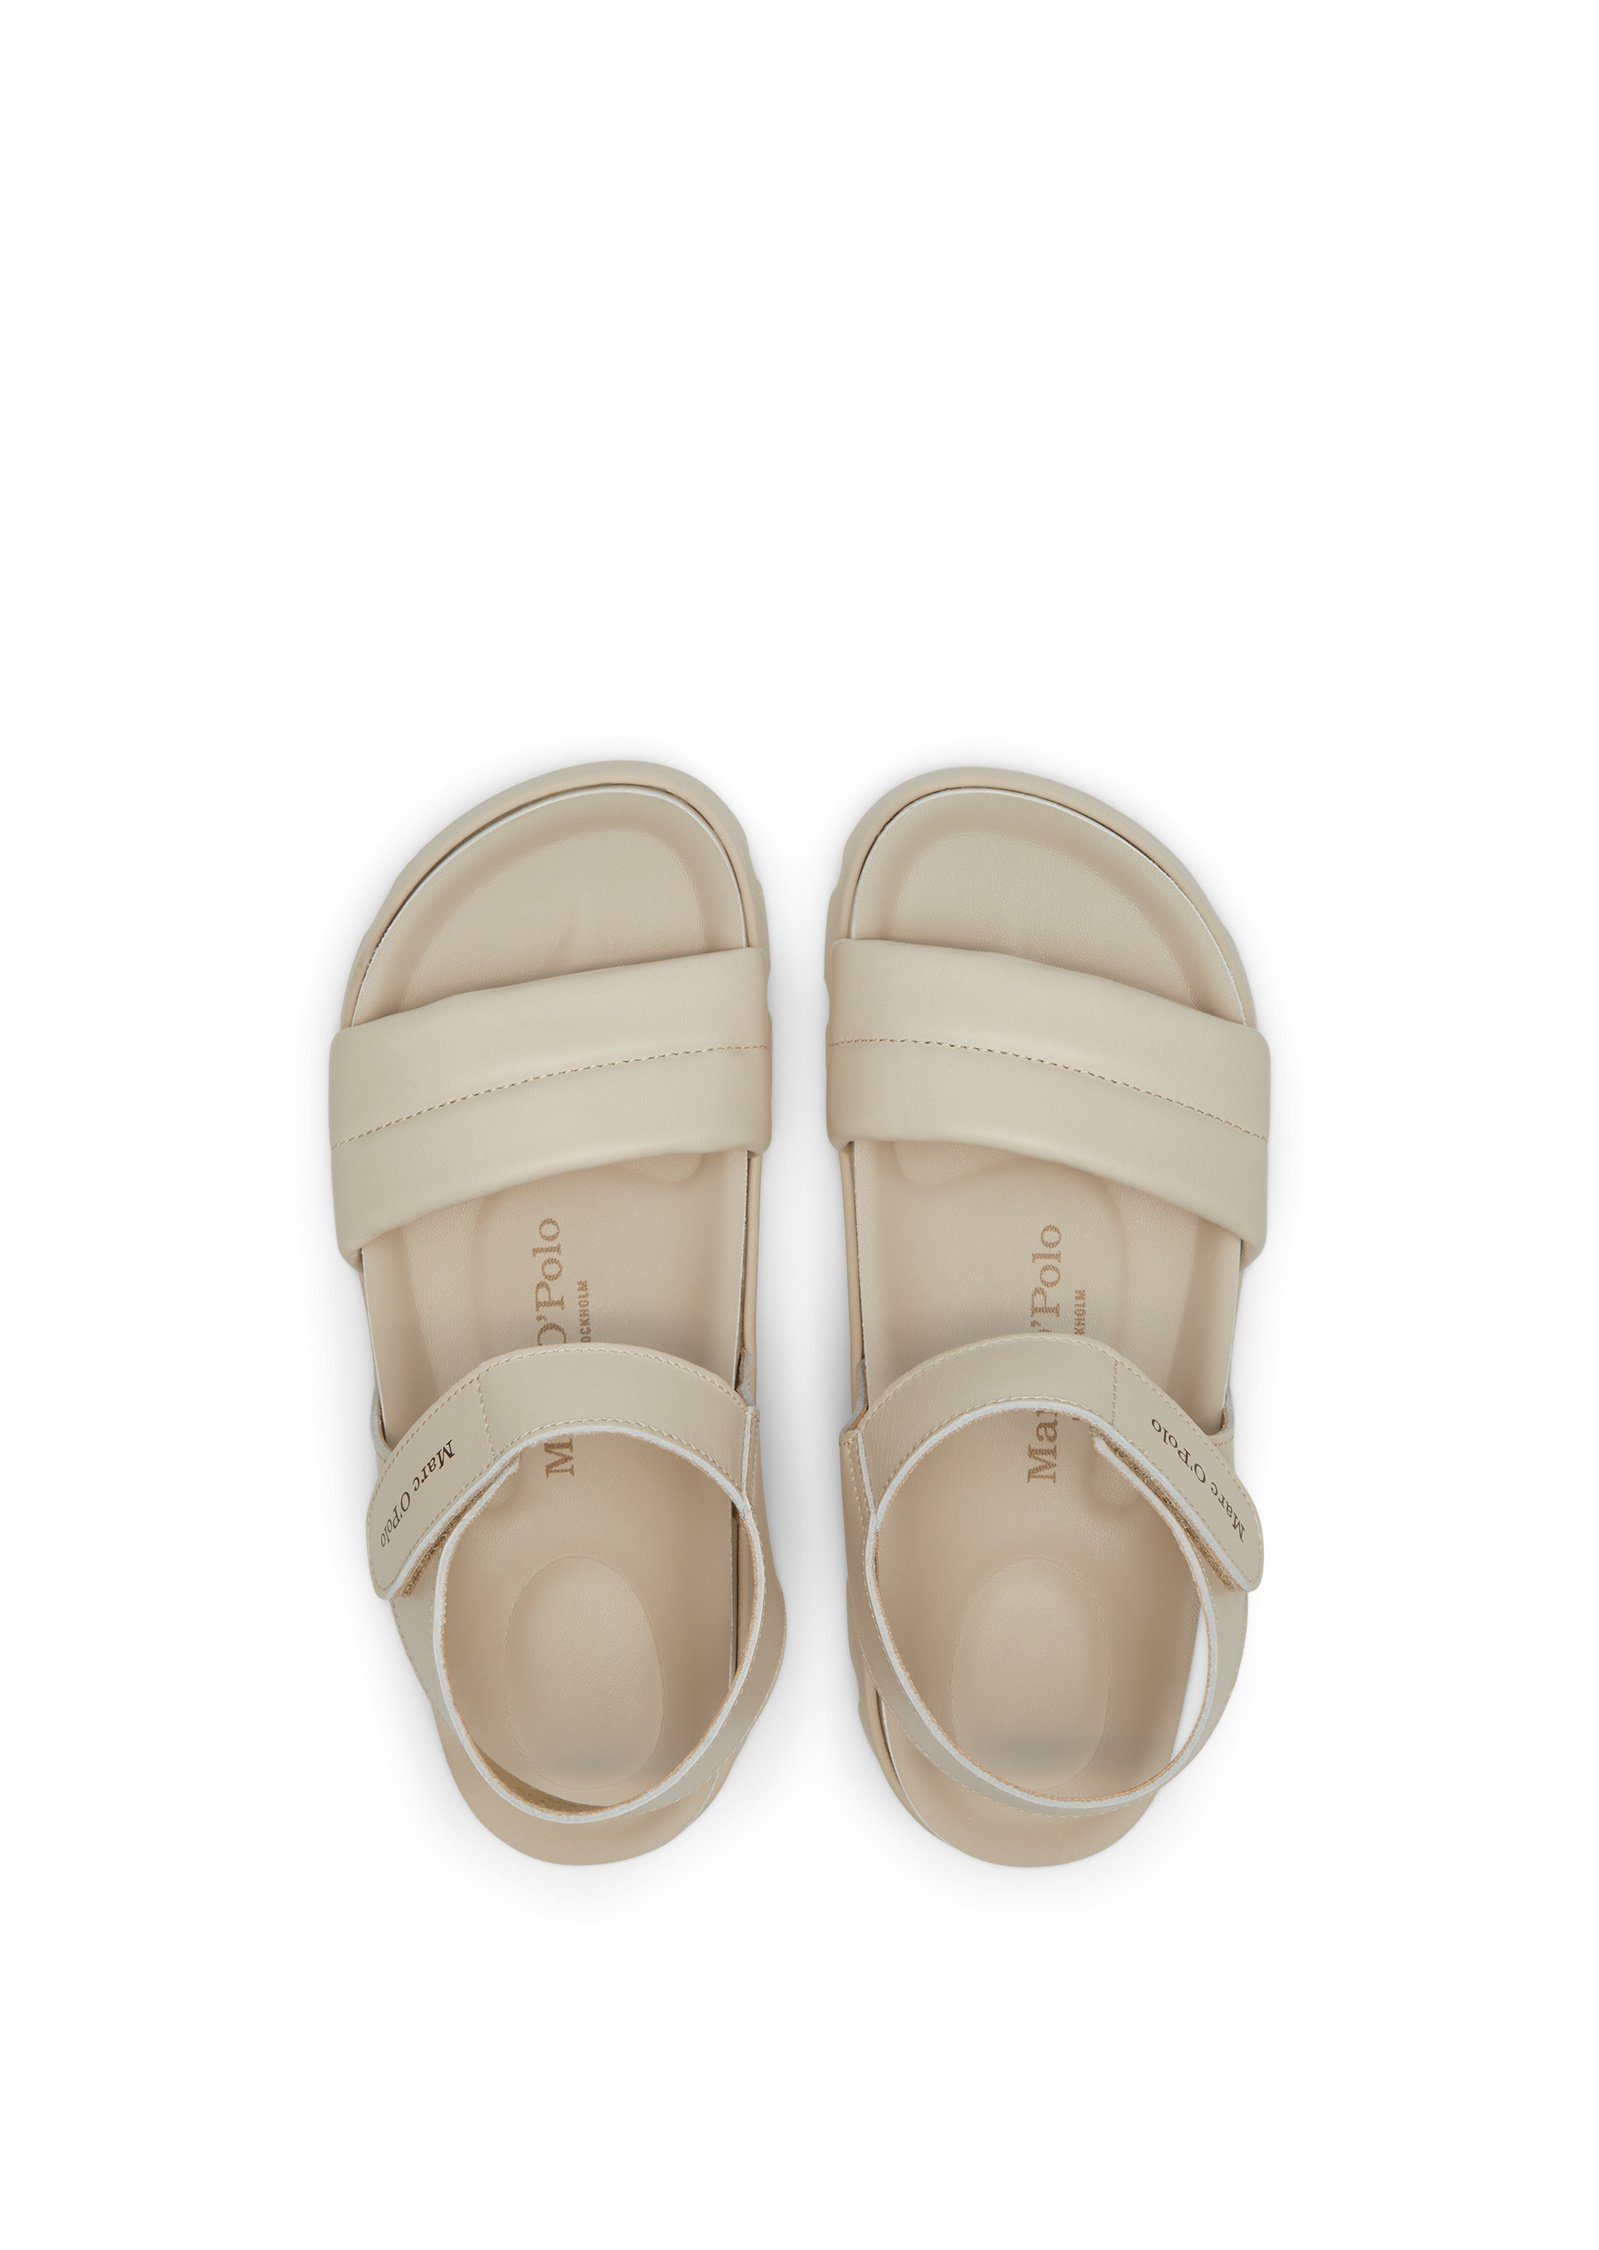 ergonomisch Sandale beige geformtem Marc O'Polo Fußbett mit